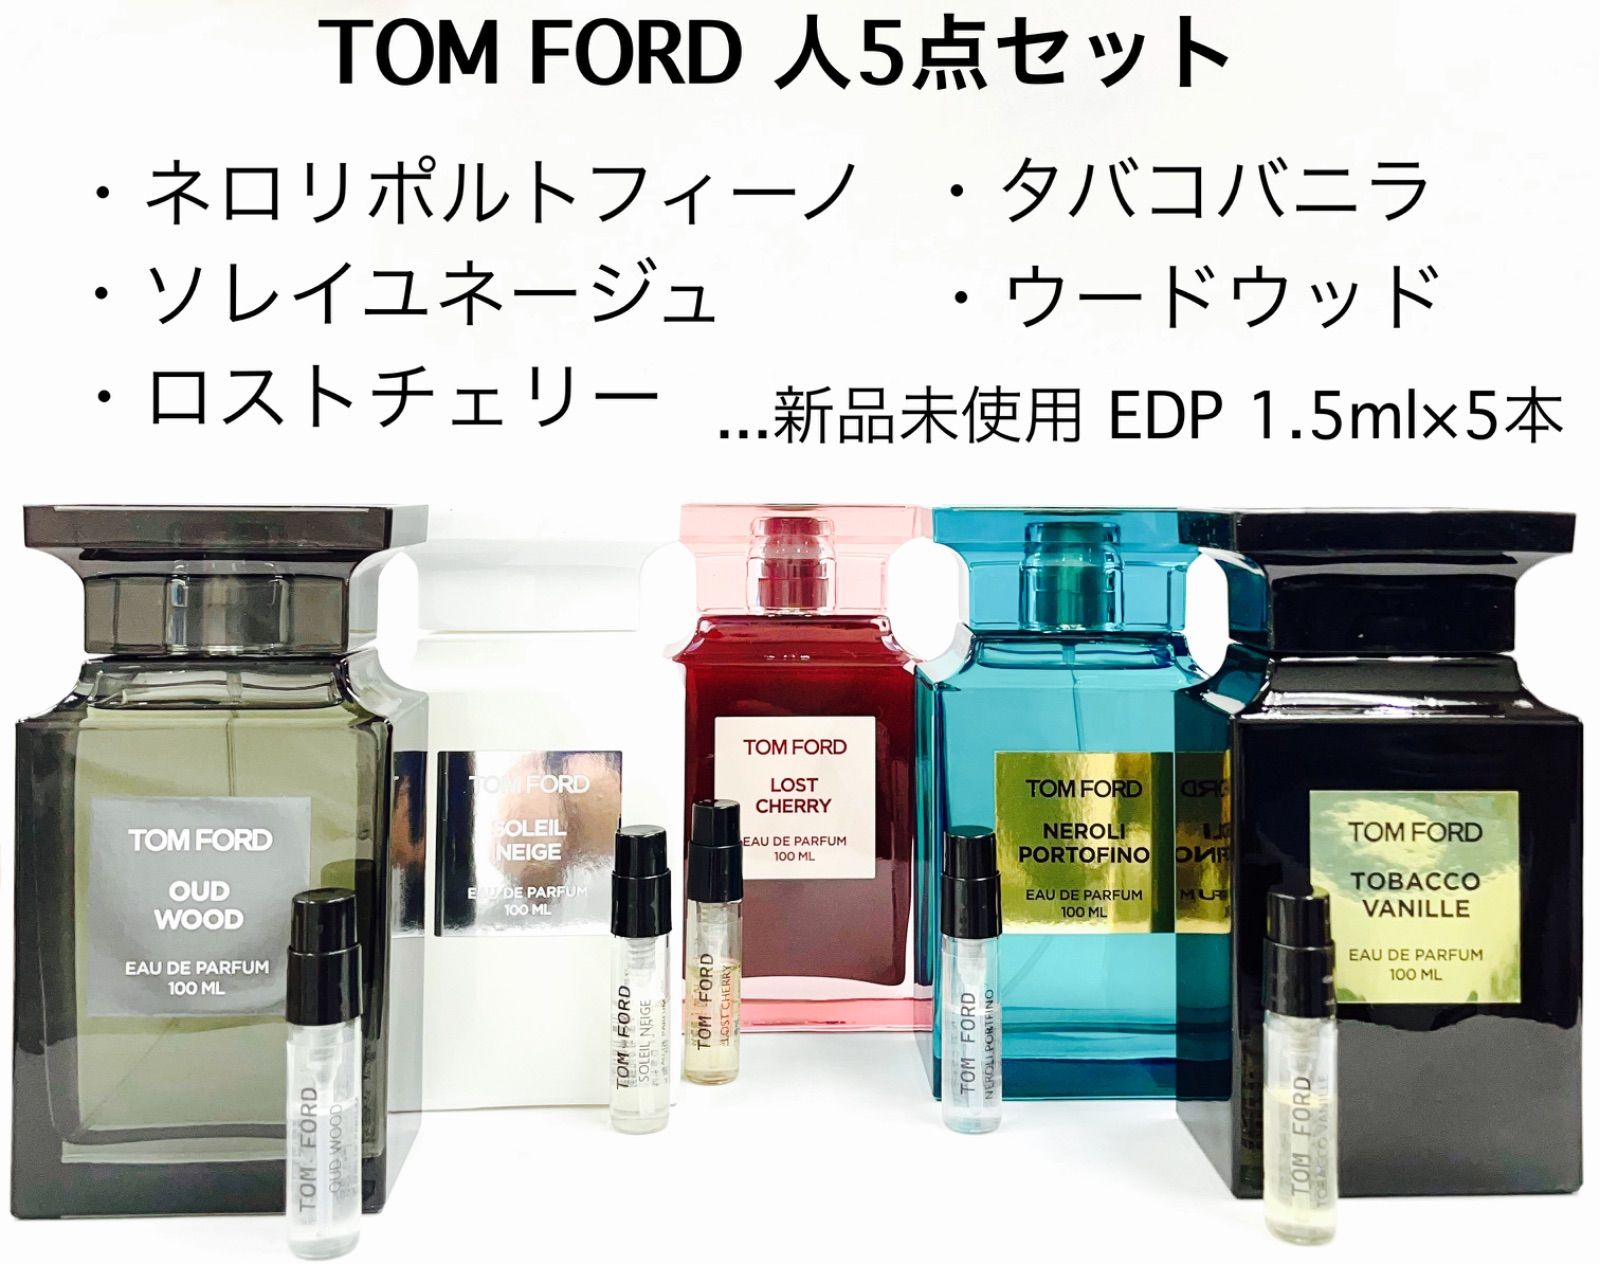 トムフォード ネロリポルトフィーノ EDP 100ml - 香水、フレグランス